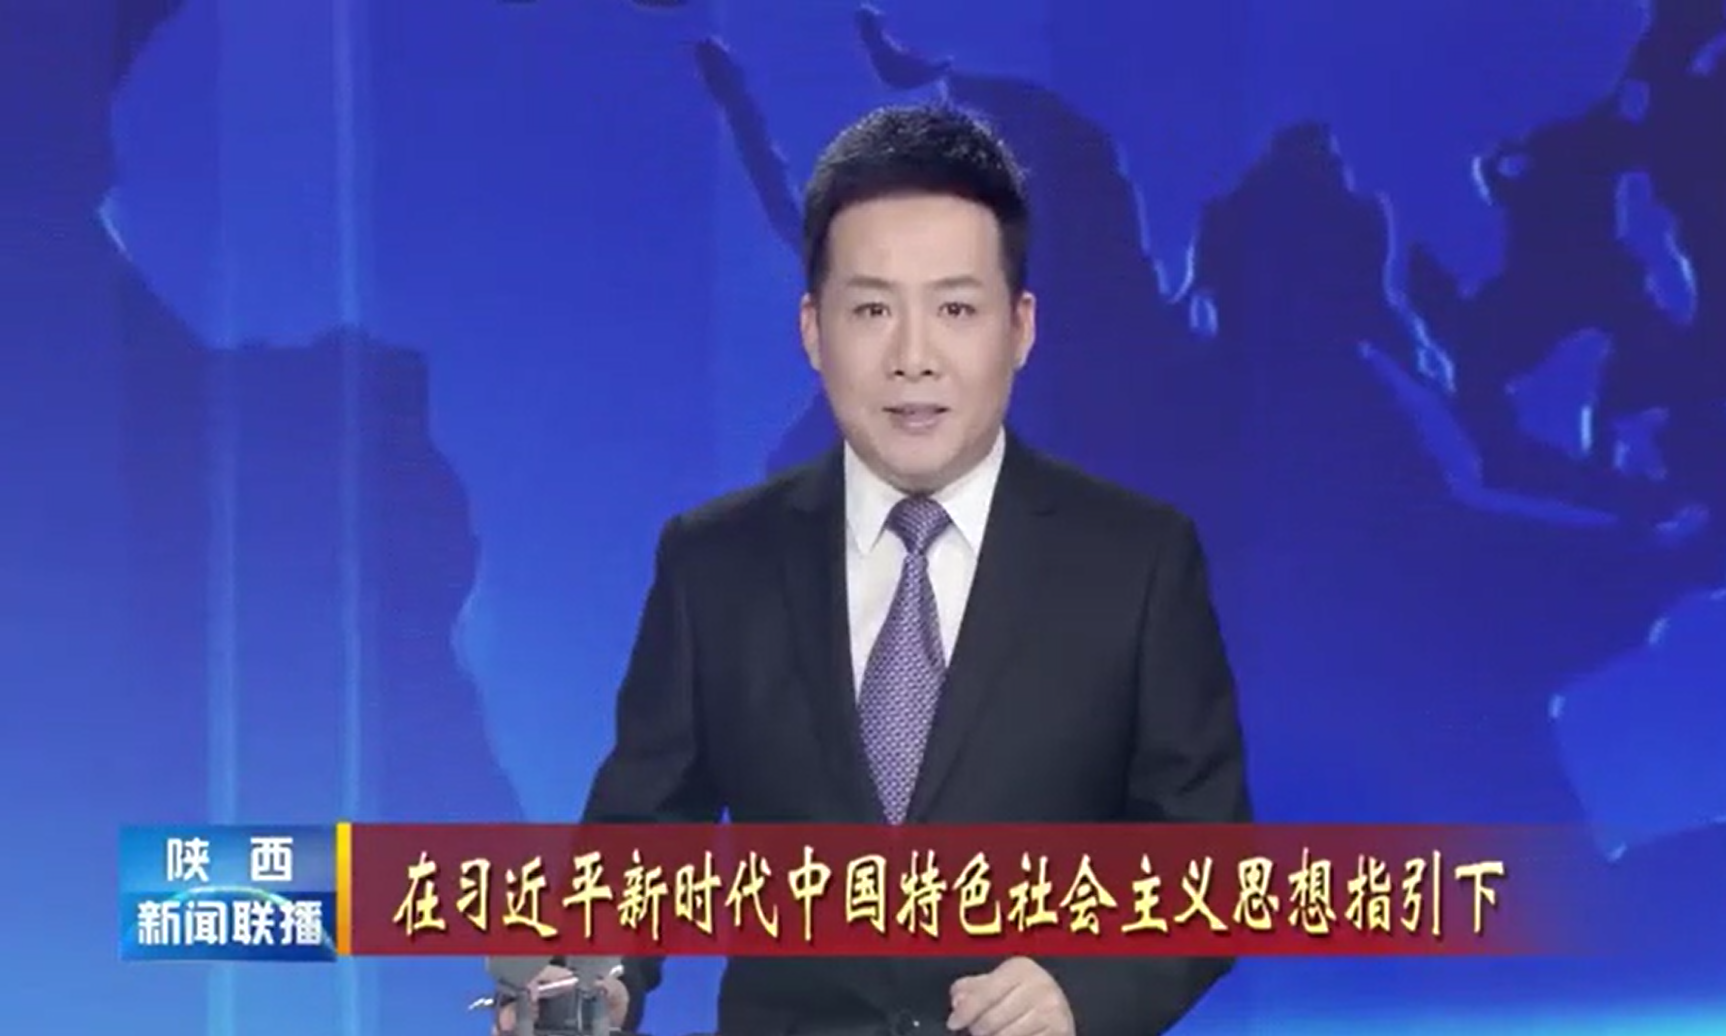 陕建安装集团大力推进重点项目建设受到陕西新闻联播报道